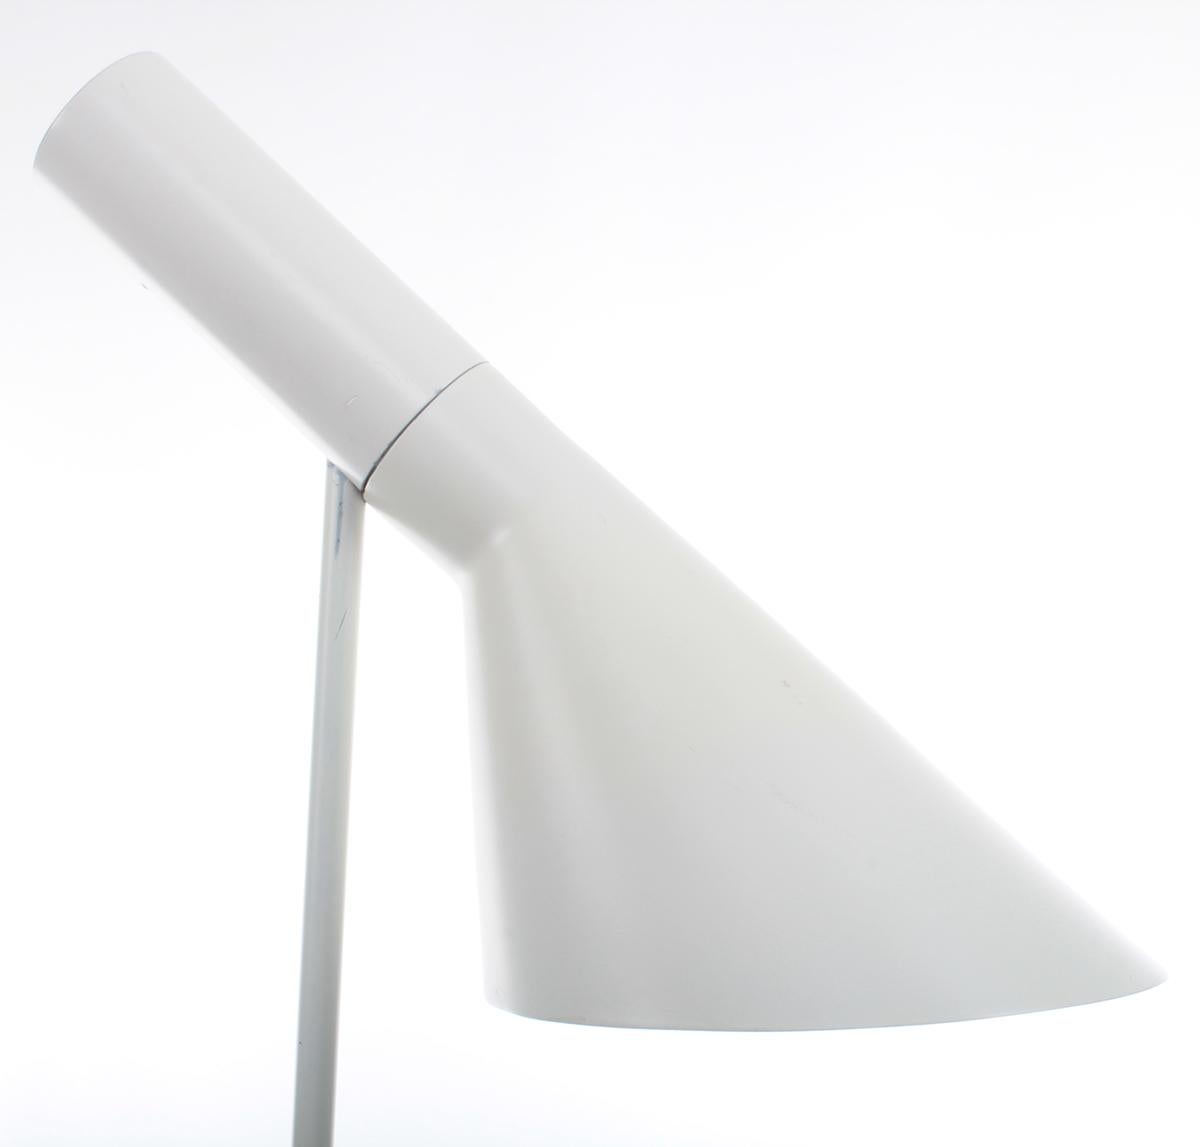 Mid-20th Century AJ Floor White Floor Lamp by Arne Jacobsen in 1957 for Louis Poulsen